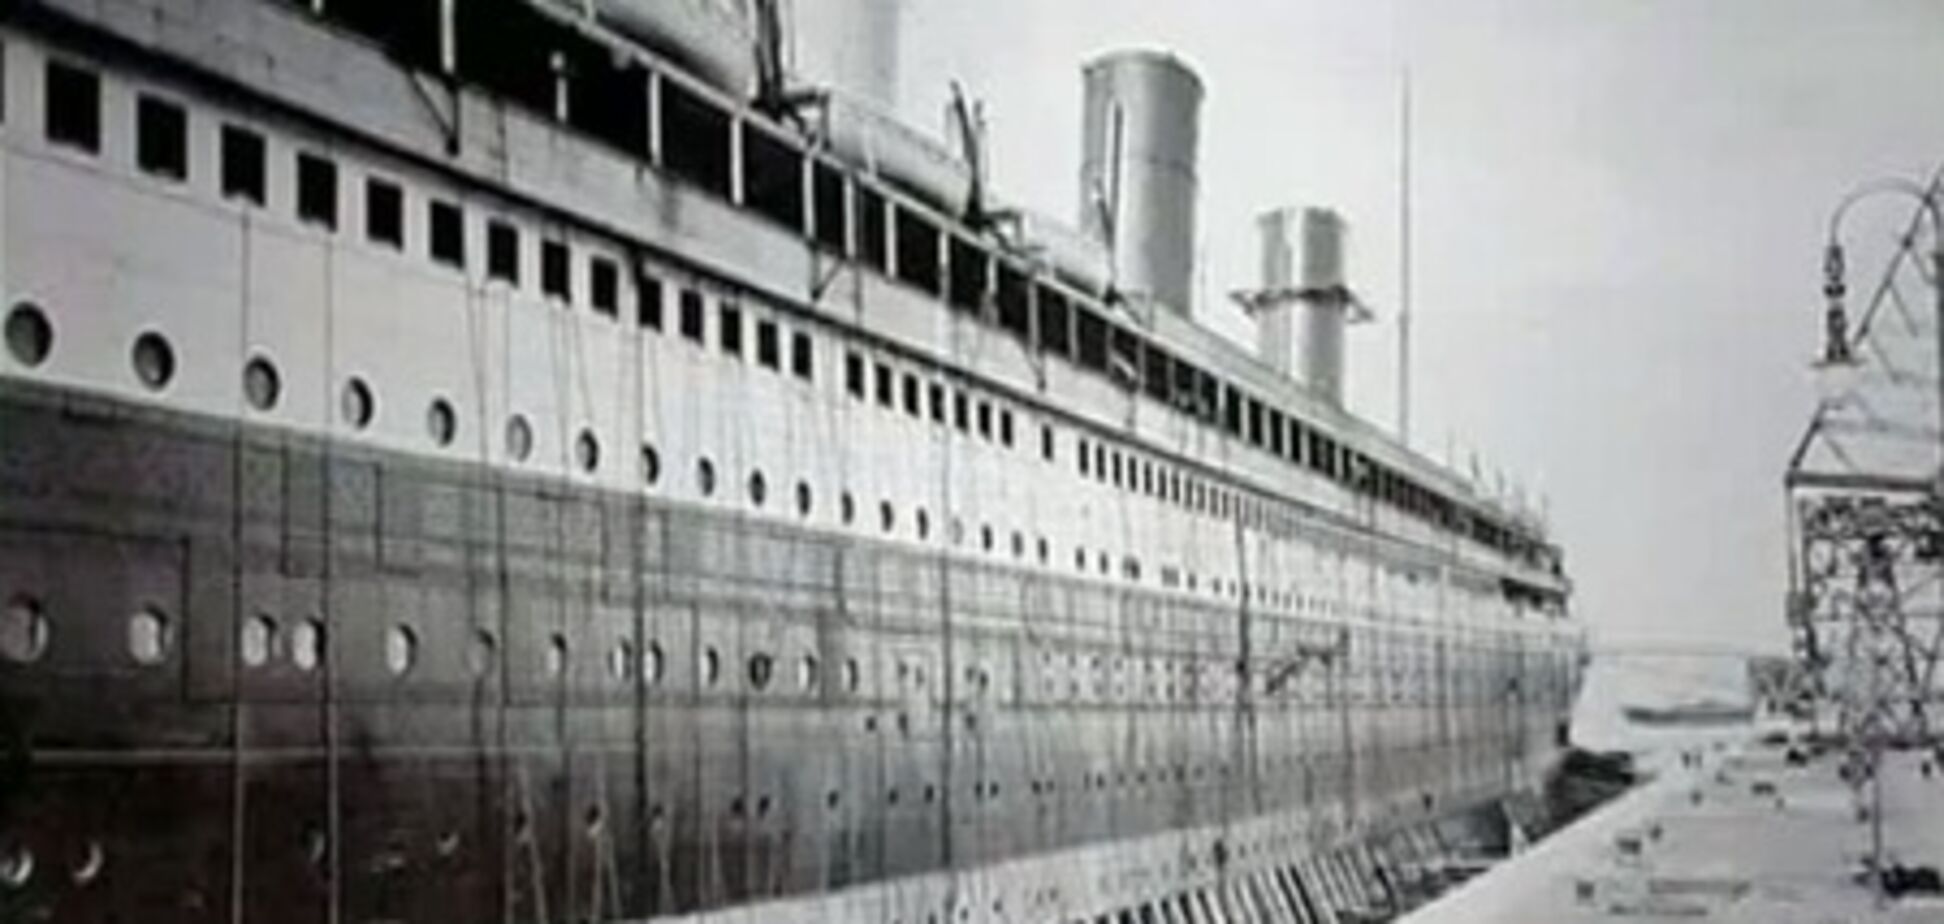 Вояж на 'Титанике' предлагают за миллион долларов